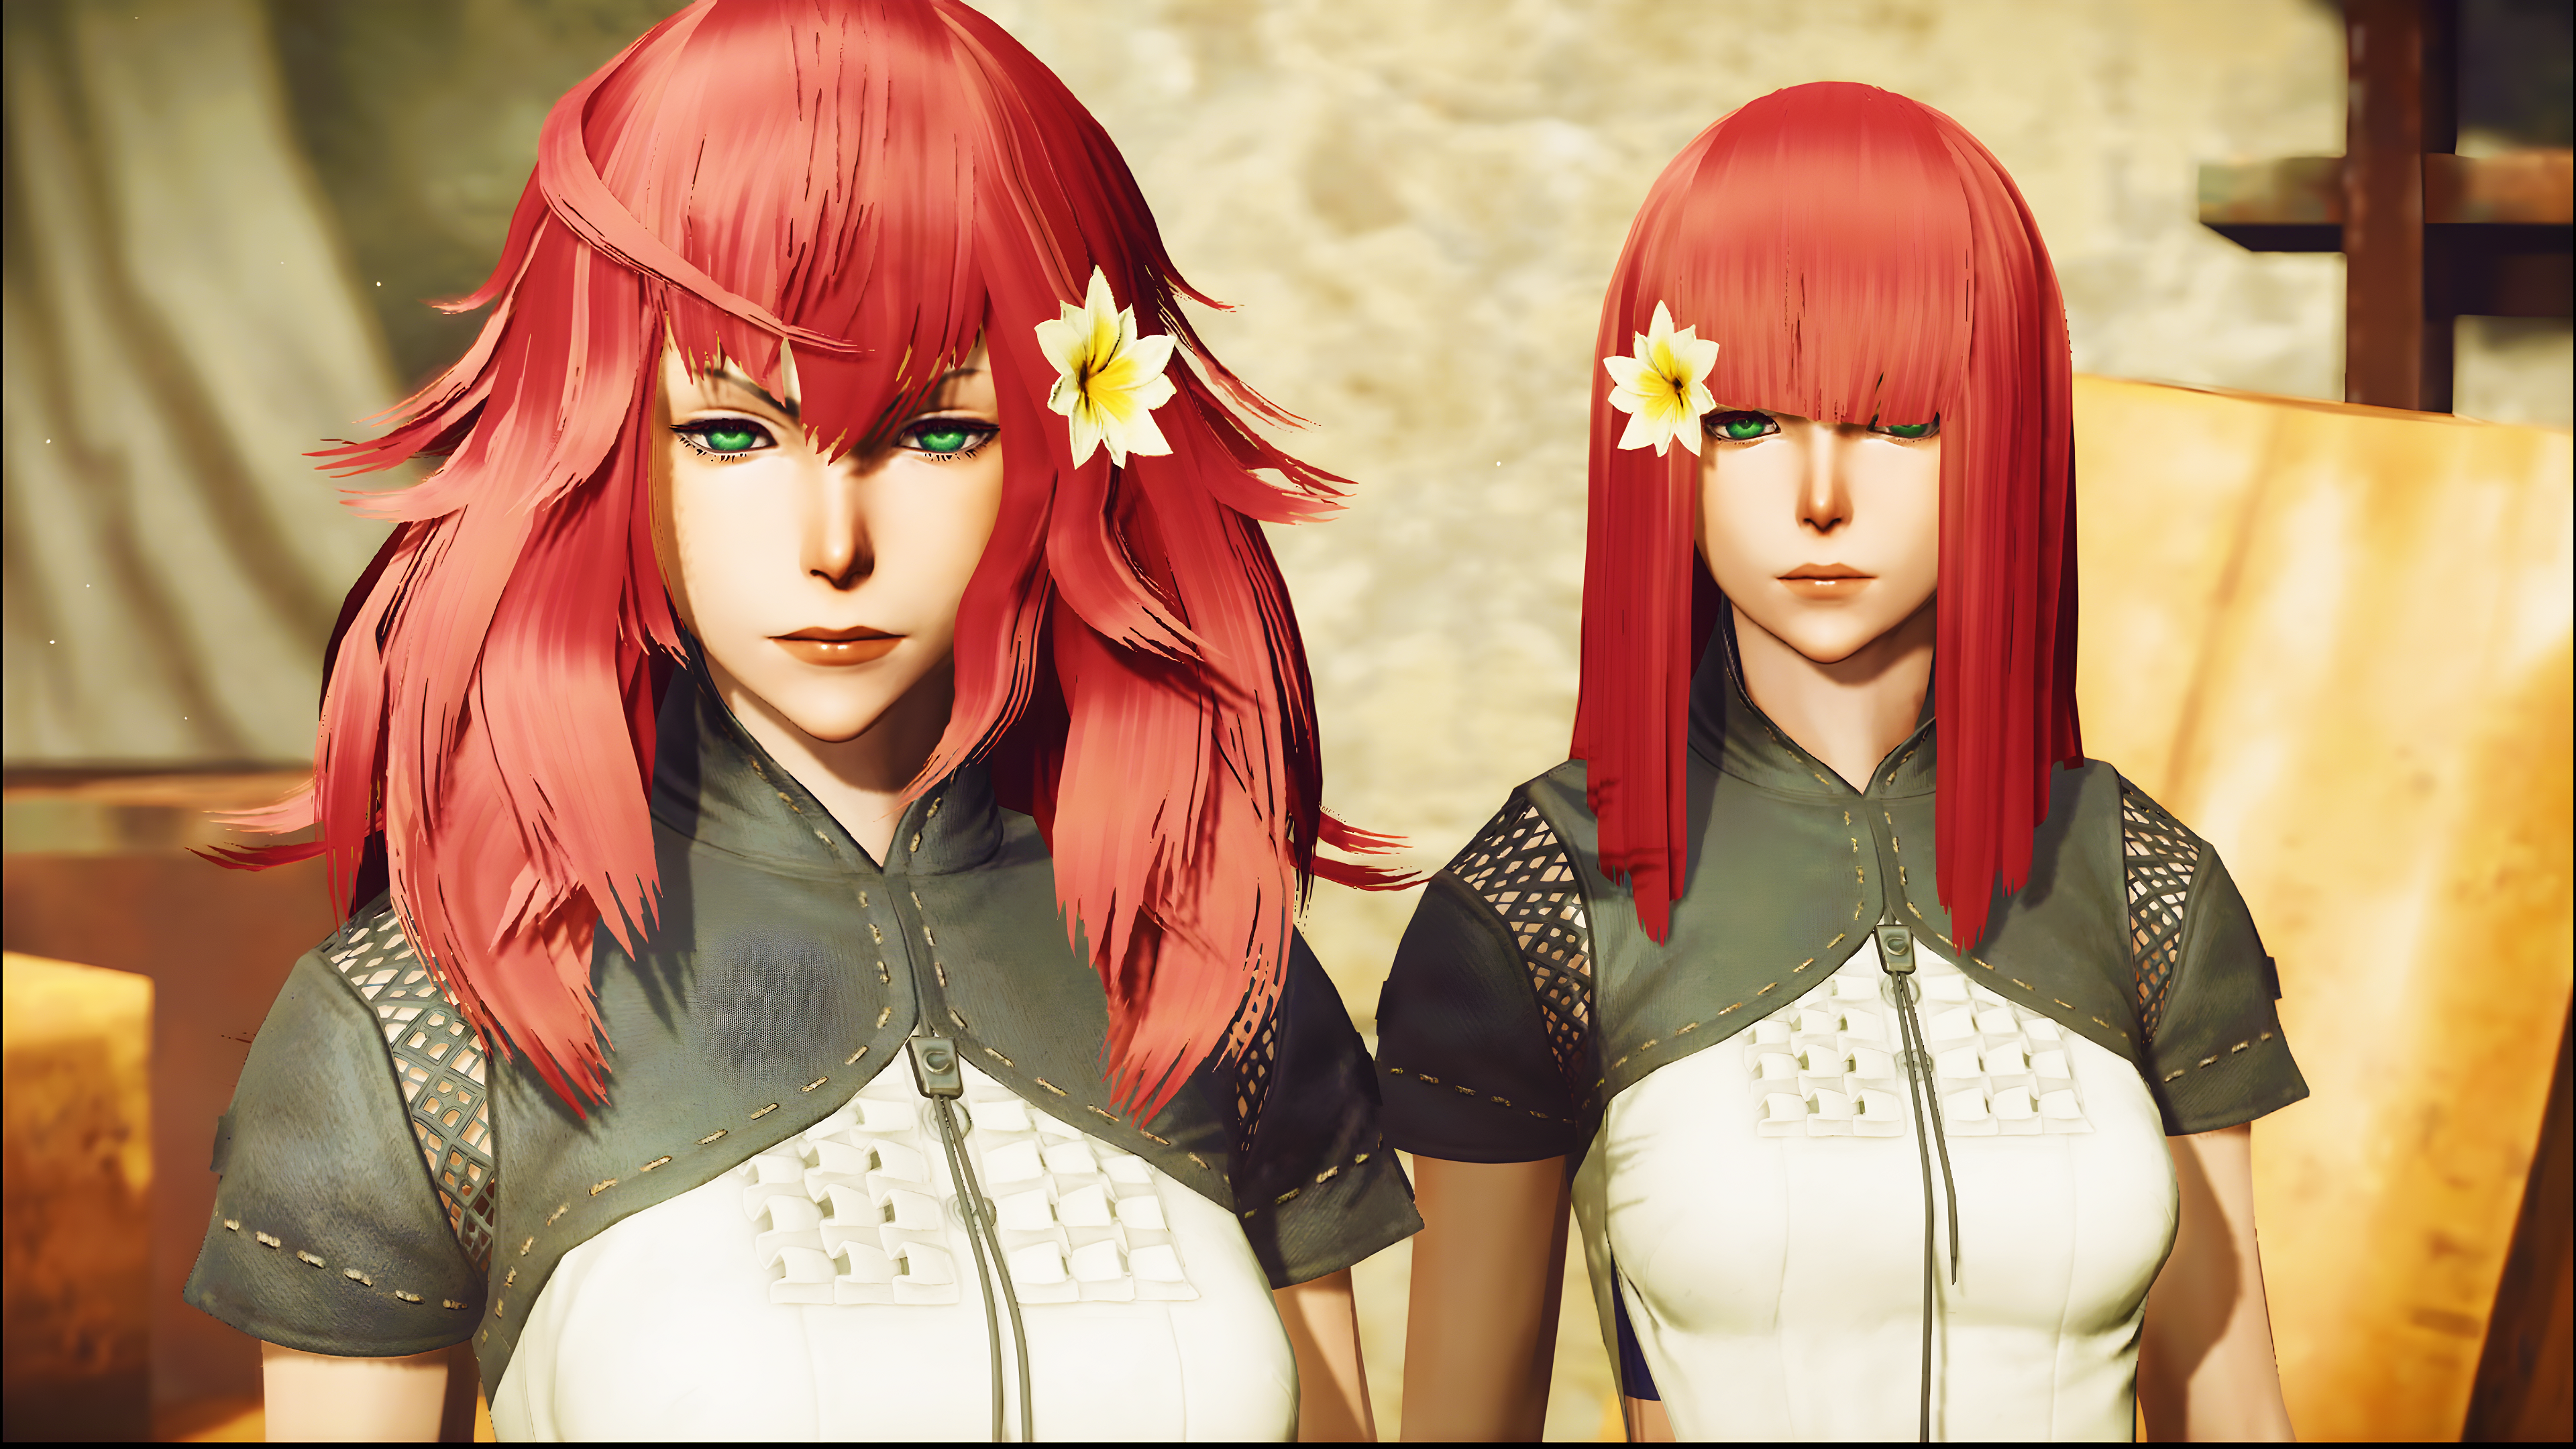 Nier Automata Devola Nier Automata Popola Nier Automata Redhead Flower In Hair Video Games Video Gam 3840x2160